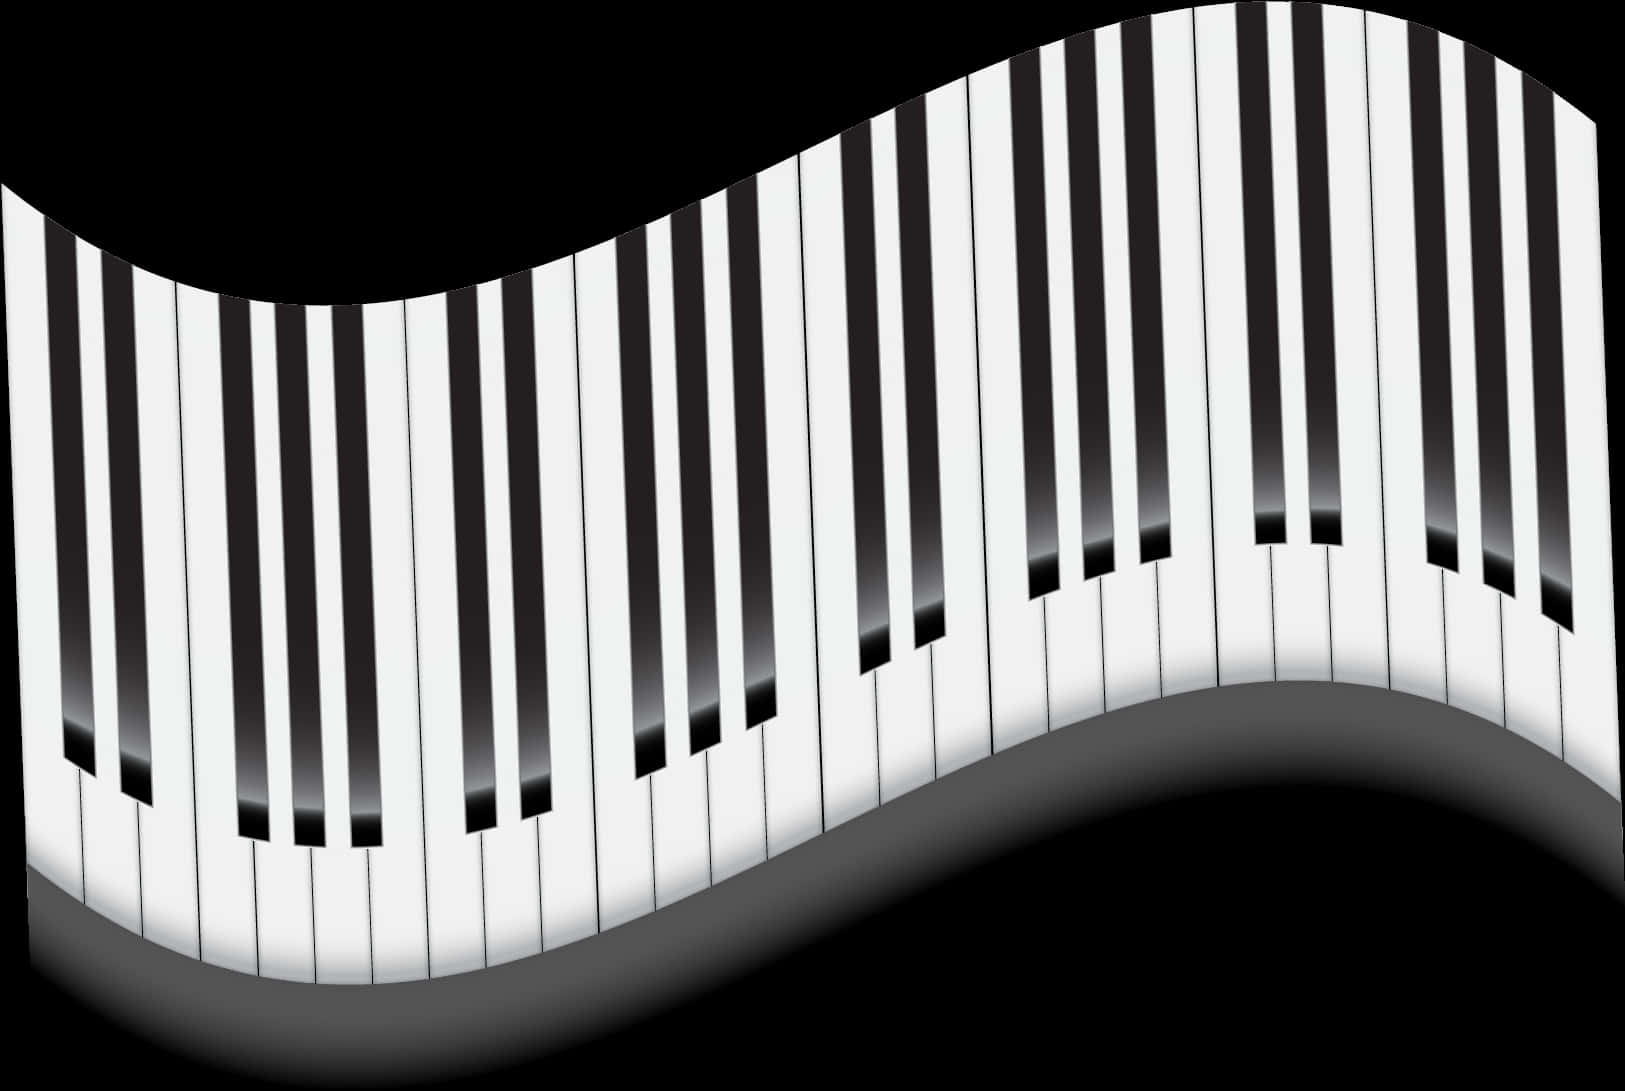 Abstract Piano Keyboard Waves.jpg PNG